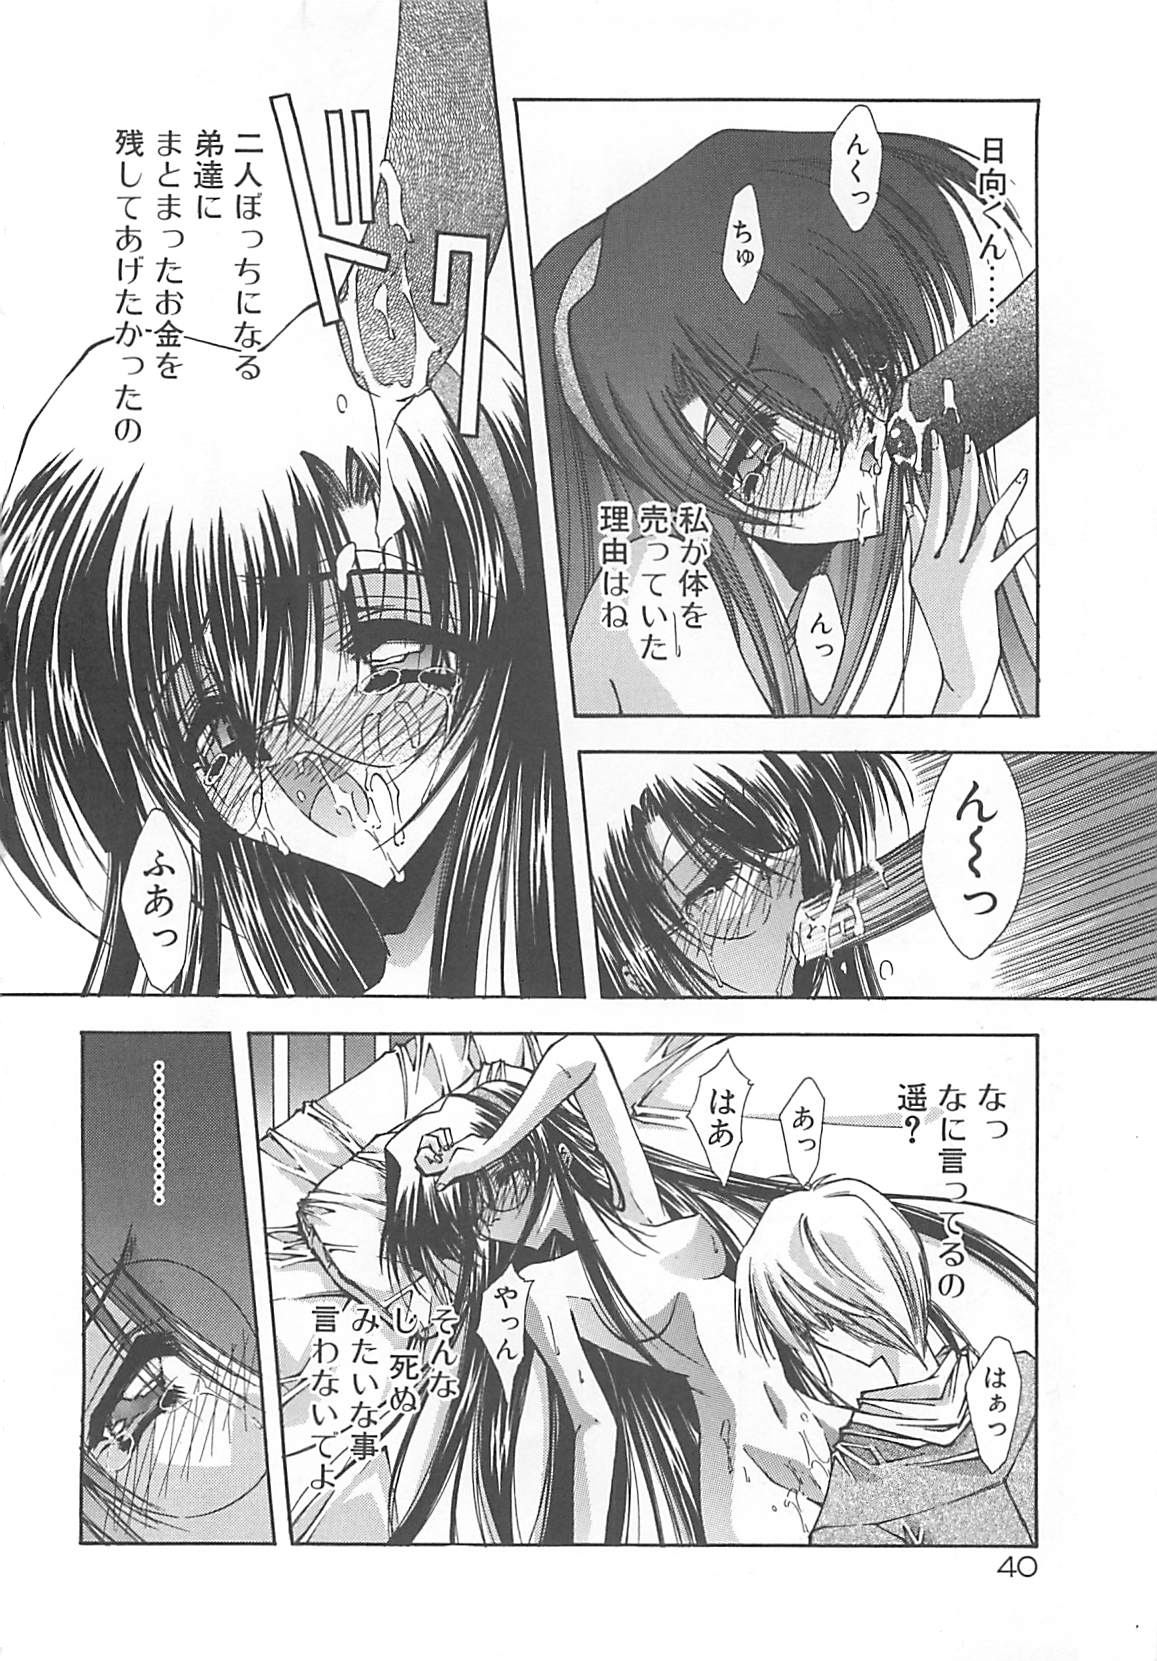 [Serizawa Katsumi] Kanon page 40 full